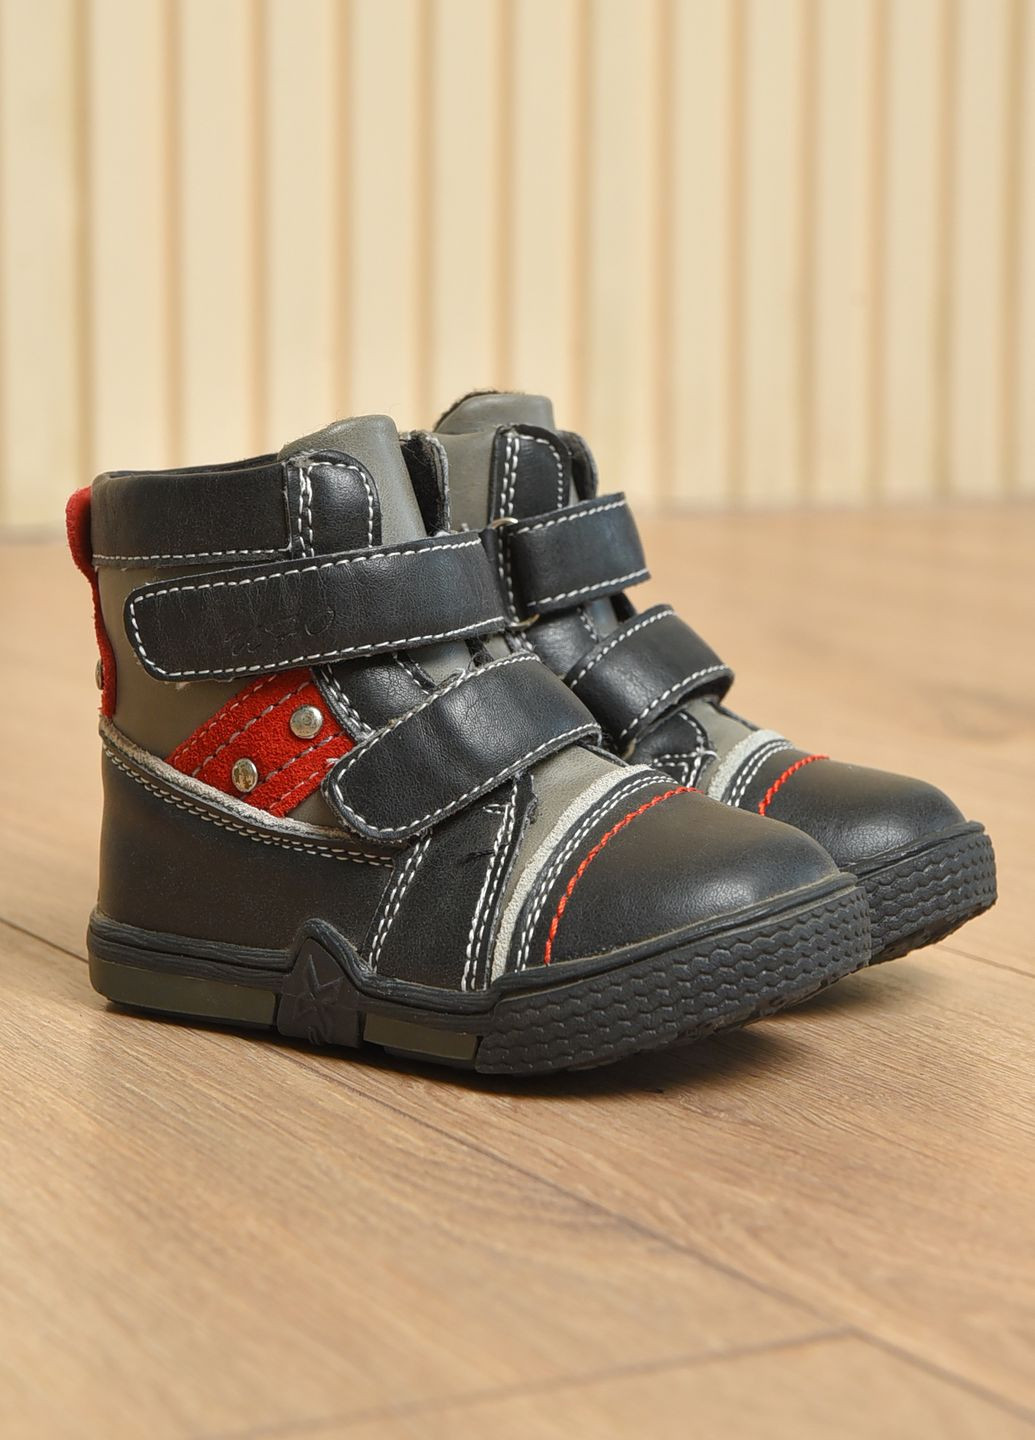 Черные спортивные осенние ботинки детские демисезонные для мальчика черного цвета Let's Shop